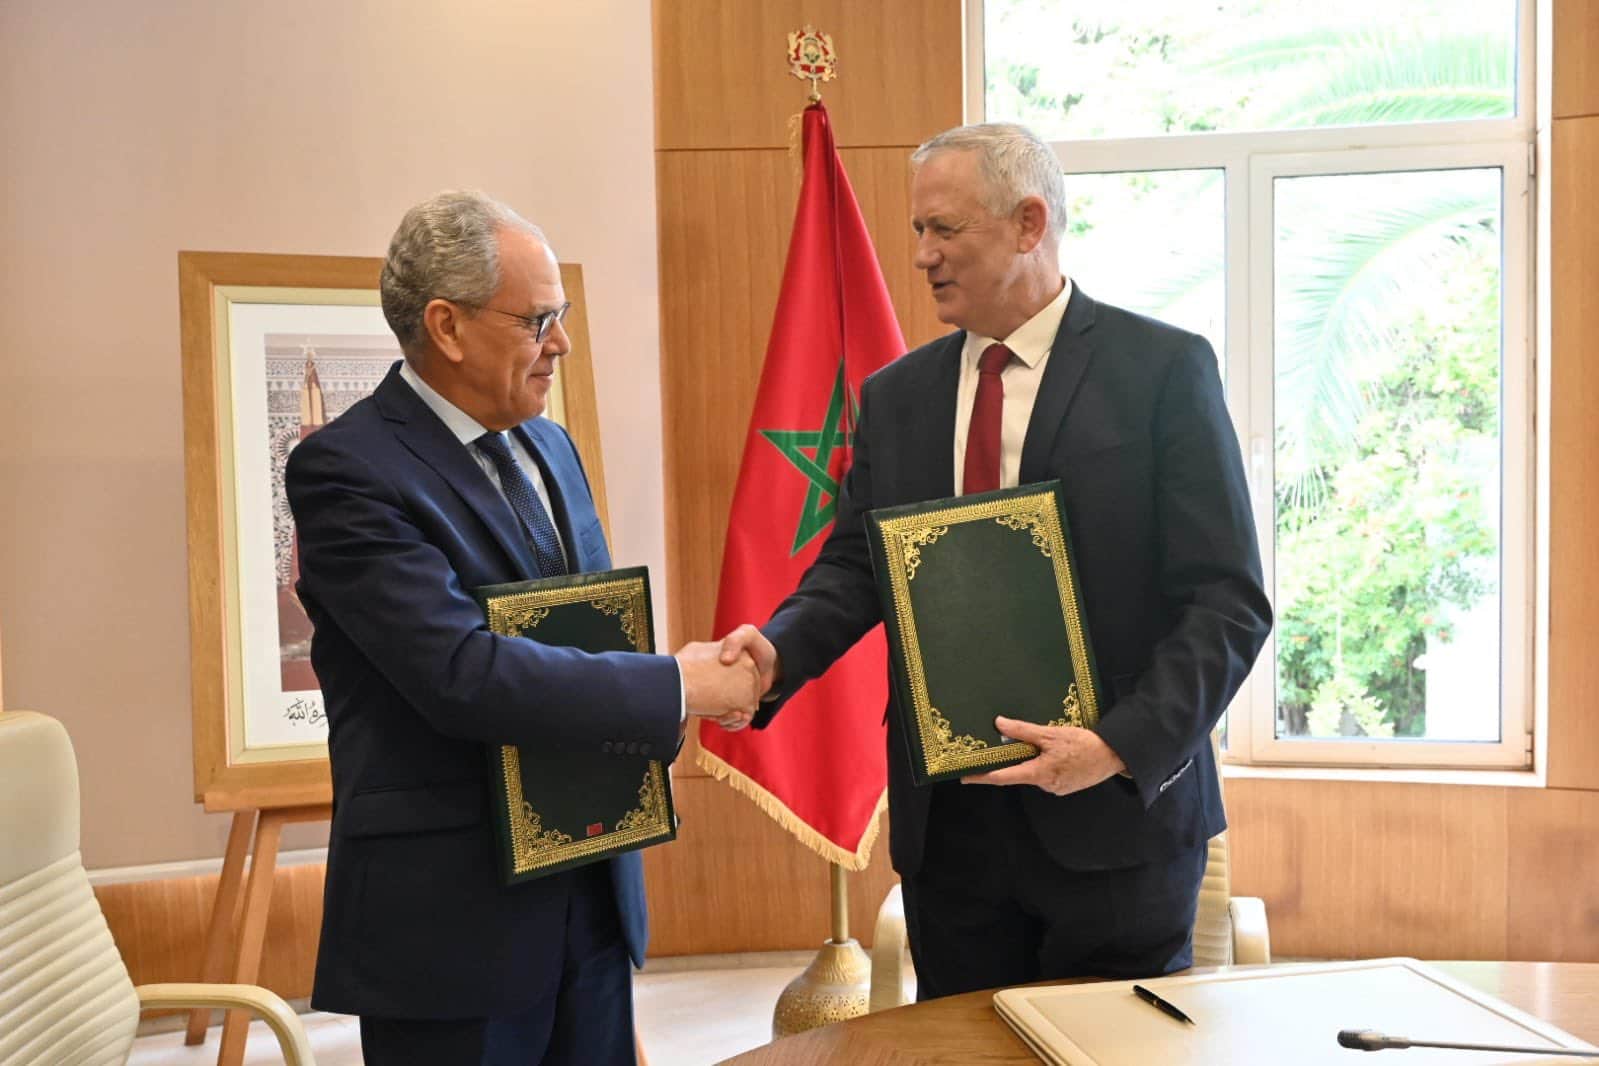 باحث مقدسي يؤكد لـ"وطن" أن اتفاقية المغرب مع "إسرائيل" الأمنية هدفها الجزائر وتدمير الأمن القومي العربي watanserb.com